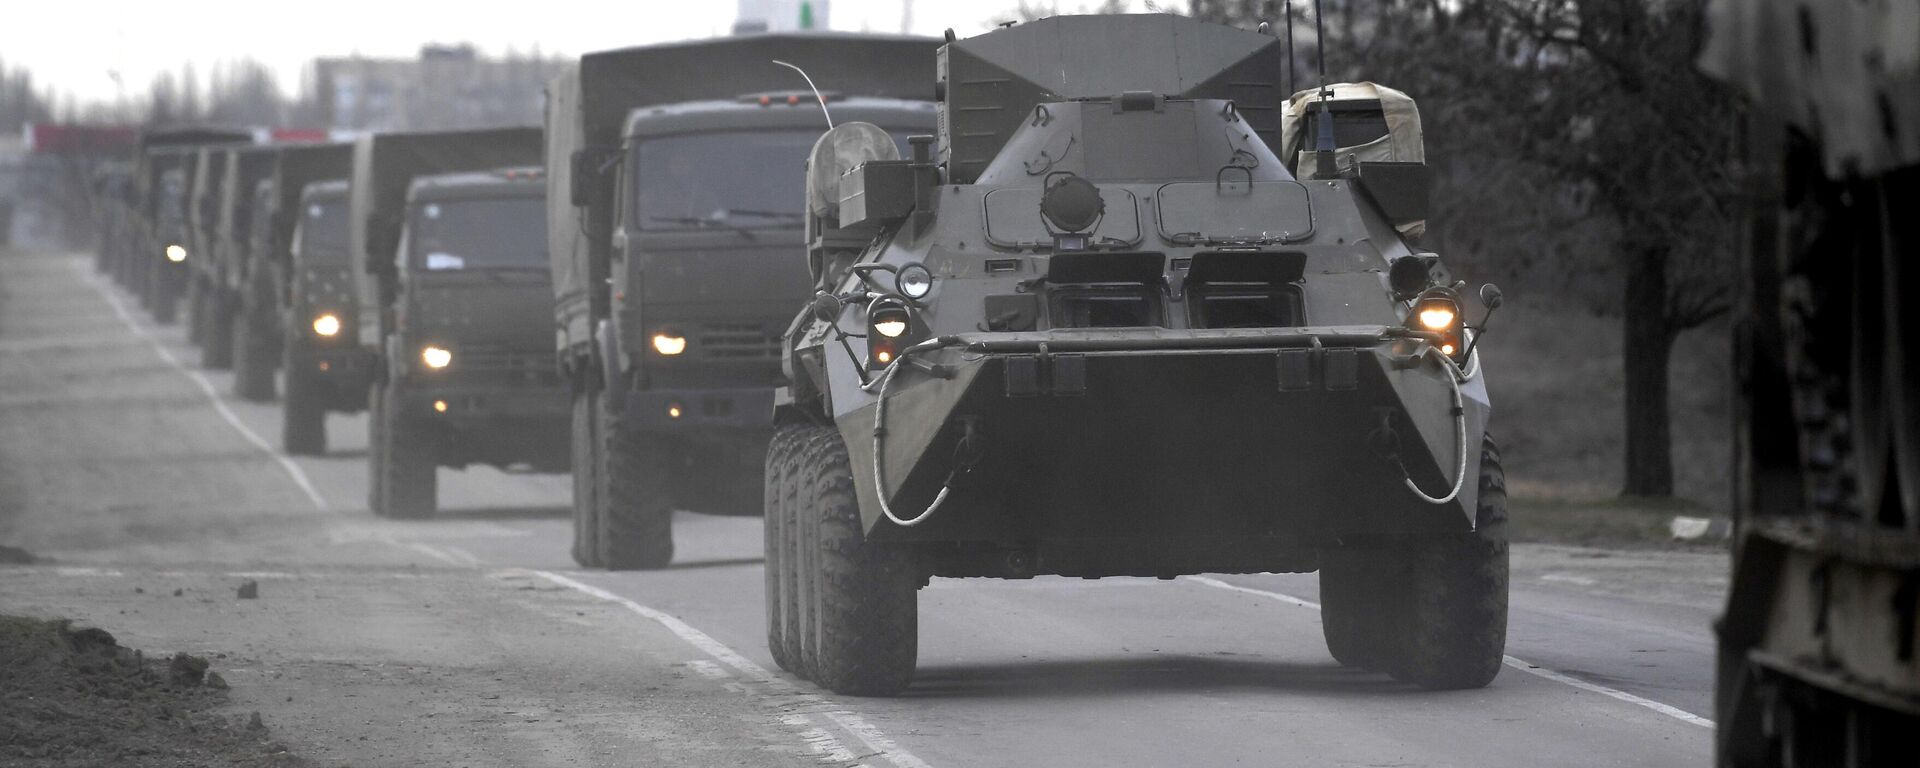 Coluna dos veículos militares das Forças Armadas da Rússia perto do posto de controle Djankoi, Crimeia, 24 de fevereiro de 2022. - Sputnik Brasil, 1920, 24.02.2022